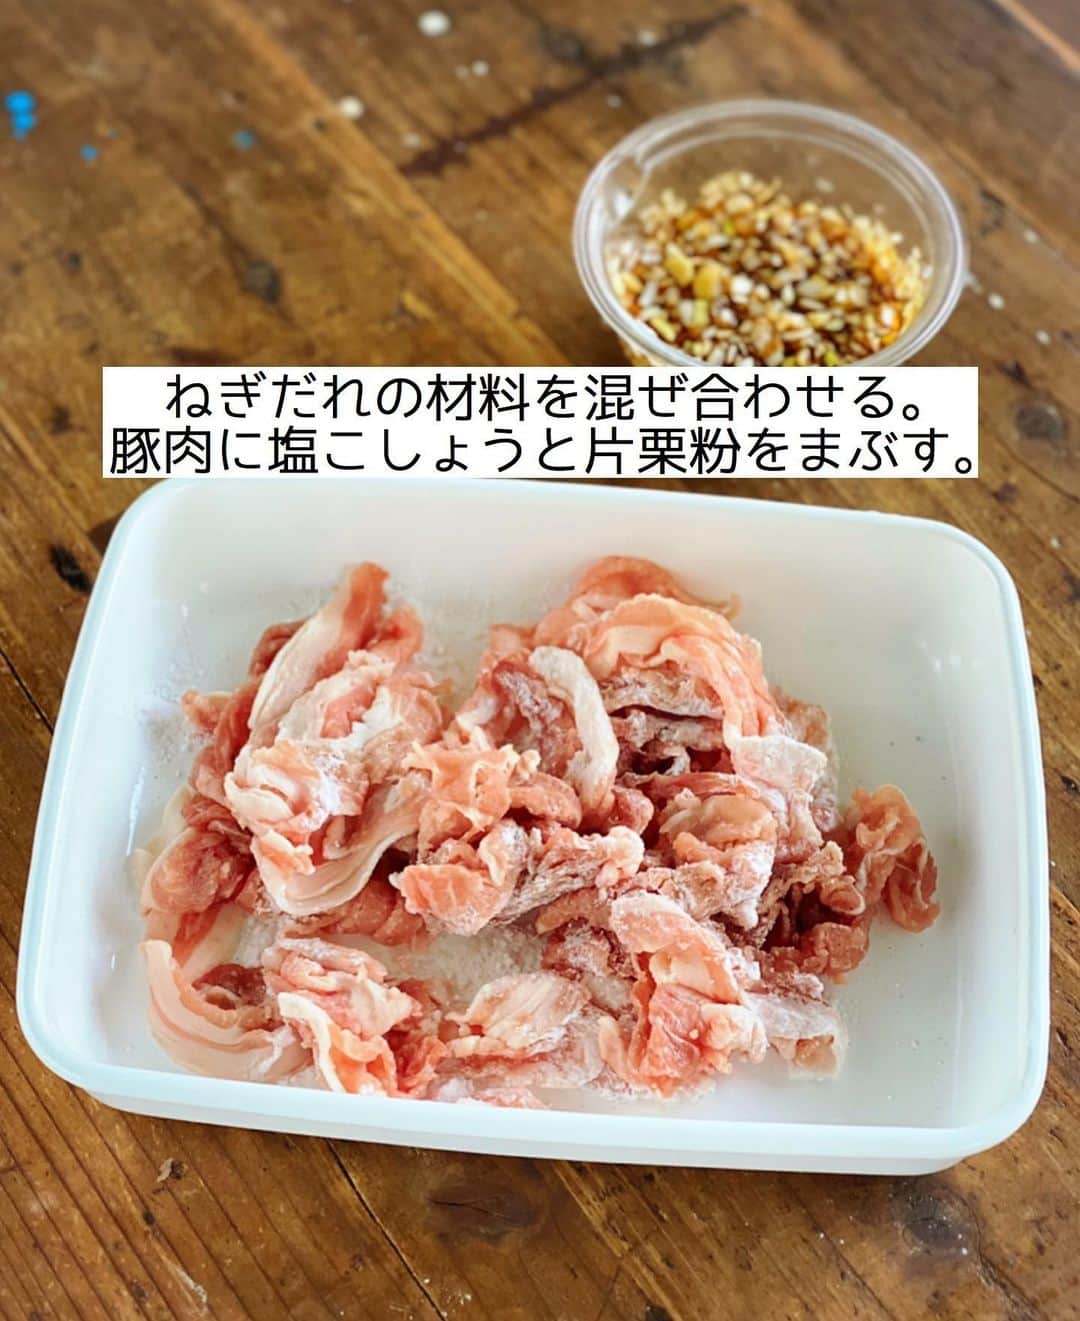 Mizuki【料理ブロガー・簡単レシピ】さんのインスタグラム写真 - (Mizuki【料理ブロガー・簡単レシピ】Instagram)「・﻿ 【#レシピ 】ーーーーーーー﻿ ♡豚こまのねぎだれがけ♡﻿ ーーーーーーーーーーーーー﻿ ﻿ ﻿ ﻿ おはようございます(*^^*)﻿ ﻿ 今日はお手軽な豚こまレシピ♩﻿ 豚肉を(適当に)摘んで焼いて﻿ ねぎだれをたっぷりかけました♡﻿ 塊肉のような食べ応えが出て﻿ 塊肉より柔らかく仕上がりますよ〜！﻿ ﻿ 豚こまボールよりうんとラクなので﻿ お気軽にお試し下さいね(*^^*)﻿ ﻿ ﻿ ﻿ ＿＿＿＿＿＿＿＿＿＿＿＿＿＿＿＿＿＿＿＿﻿ 【2人分】﻿ 豚こま切れ肉...200g﻿ 塩こしょう...少々﻿ 片栗粉...大2﻿ ●長ねぎ(みじん切り)...10cm﻿ ●生姜(みじん切り)...1/2かけ﻿ ●醤油・酢...各大1.5﻿ ●砂糖...大1﻿ ●ごま油...小1﻿ サラダ油...大2﻿ レタス...適量﻿ ﻿ 1.●を混ぜ合わせてねぎだれを作る。豚肉に塩こしょうと片栗粉をまぶす。﻿ 2.フライパンにサラダ油を中火で熱し、豚肉を一口大に摘んで入れ、返しながら5〜6分焼いて火を通す。﻿ 3.器にレタスを敷いて2をのせ、ねぎだれをかける。﻿ ￣￣￣￣￣￣￣￣￣￣￣￣￣￣￣￣￣￣￣￣﻿ ﻿ ﻿ ﻿ 《ポイント》﻿ ♦︎豚肉は摘んでなんとなくまとめればOK♩豚こまボールのように形を整える必要はありません♩﻿ ♦︎焼いている間はいじらない方が形が崩れません♩﻿ ﻿ ﻿ ﻿ ﻿ ﻿ ﻿ ﻿ ﻿ ﻿ ⭐️発売中⭐️3刷重版が決まりました😭﻿ 本当にありがとうございます(涙)﻿ _____________________________________﻿ \15分でいただきます/﻿ 📕#Mizukiの2品献立 📕﻿ (9月24日発売・マガジンハウス)﻿ ￣￣￣￣￣￣￣￣￣￣￣￣￣￣￣￣￣﻿ ﻿ 忙しい私たちには﻿ 2品くらいがちょうどいい！﻿ 『しんどくない献立、考えました』﻿ ￣￣￣￣￣￣￣￣￣￣￣￣￣￣￣￣﻿ ﻿ ーーーーーPART.1 ーーーーー﻿ 【Mizukiのお墨つき！２品献立ベスト10】﻿ 約15分でできる10献立をご紹介！﻿ メインは全部フライパン﻿ 副菜はレンチンor混ぜるだけ♡﻿ ﻿ ーーーーーPART.2 ーーーーー﻿ 【フライパンひとつ！今夜のメインおかず】﻿ 献立の主役になる肉や魚のおかず50品！﻿ Part3の副菜と組み合わせれば﻿ 献立のバリエーションが広がりますよ♩﻿ ﻿ ーーーーー PART.3 ーーーーー﻿ 【合間に作れる！ 野菜別かんたん副菜】﻿ レンチンor和えるだけの副菜レシピを﻿ 素材別にたっぷり収録♩﻿ ﻿ ーーーーー番外編ーーーーー﻿ 【ひとつで満足！ご飯＆麺】﻿ 【具だくさん！おかずスープ】﻿ 【オーブンいらずのおやつレシピ】﻿ ￣￣￣￣￣￣￣￣￣￣￣￣￣￣￣￣￣￣﻿ (ハイライトにリンク🔗あります💗)﻿ ﻿ ﻿ ﻿ ﻿ ﻿ ＿＿＿＿＿＿＿＿＿＿＿＿＿＿＿＿＿＿﻿ 🔔テレビ出演のお知らせ🔔﻿ 【NHK Eテレ #まる得マガジン 】﻿ 2回目の放送が始まっています✨﻿ 昼(11：55〜 月-木) ﻿ 俳優の武田航平さん﻿ (@kouhei_takeda.official )と一緒に﻿ 絶品おやつから意外なランチまで﻿ たくさん作らせていただきますよ♩﻿ ﻿ ＊NHKテキスト発売中↓📕﻿ 【ホットケーキミックスで﻿ 絶品おやつ&意外なランチ】﻿ ￣￣￣￣￣￣￣￣￣￣￣￣￣￣￣￣￣￣﻿ ﻿ ﻿ ﻿ ﻿ ﻿ ＿＿＿＿＿＿＿＿＿＿＿＿＿＿＿＿＿＿﻿ レシピを作って下さった際や﻿ レシピ本についてのご投稿には﻿ タグ付け( @mizuki_31cafe )して﻿ お知らせいただけると嬉しいです😊💕﻿ ￣￣￣￣￣￣￣￣￣￣￣￣￣￣￣￣￣￣﻿ ﻿ ﻿ ﻿ ﻿ #豚こま#豚肉#ねぎだれ#豚こまボール#Mizuki#簡単レシピ#時短レシピ#節約レシピ#料理#フーディーテーブル#マカロニメイト#おうちごはん#デリスタグラマー#料理好きな人と繋がりたい#食べ物#料理記録#おうちごはんlover#写真好きな人と繋がりたい#foodpic#cooking#recipe#lin_stagrammer#foodporn#yummy#f52grams#豚こまのねぎだれがけm」12月7日 7時05分 - mizuki_31cafe